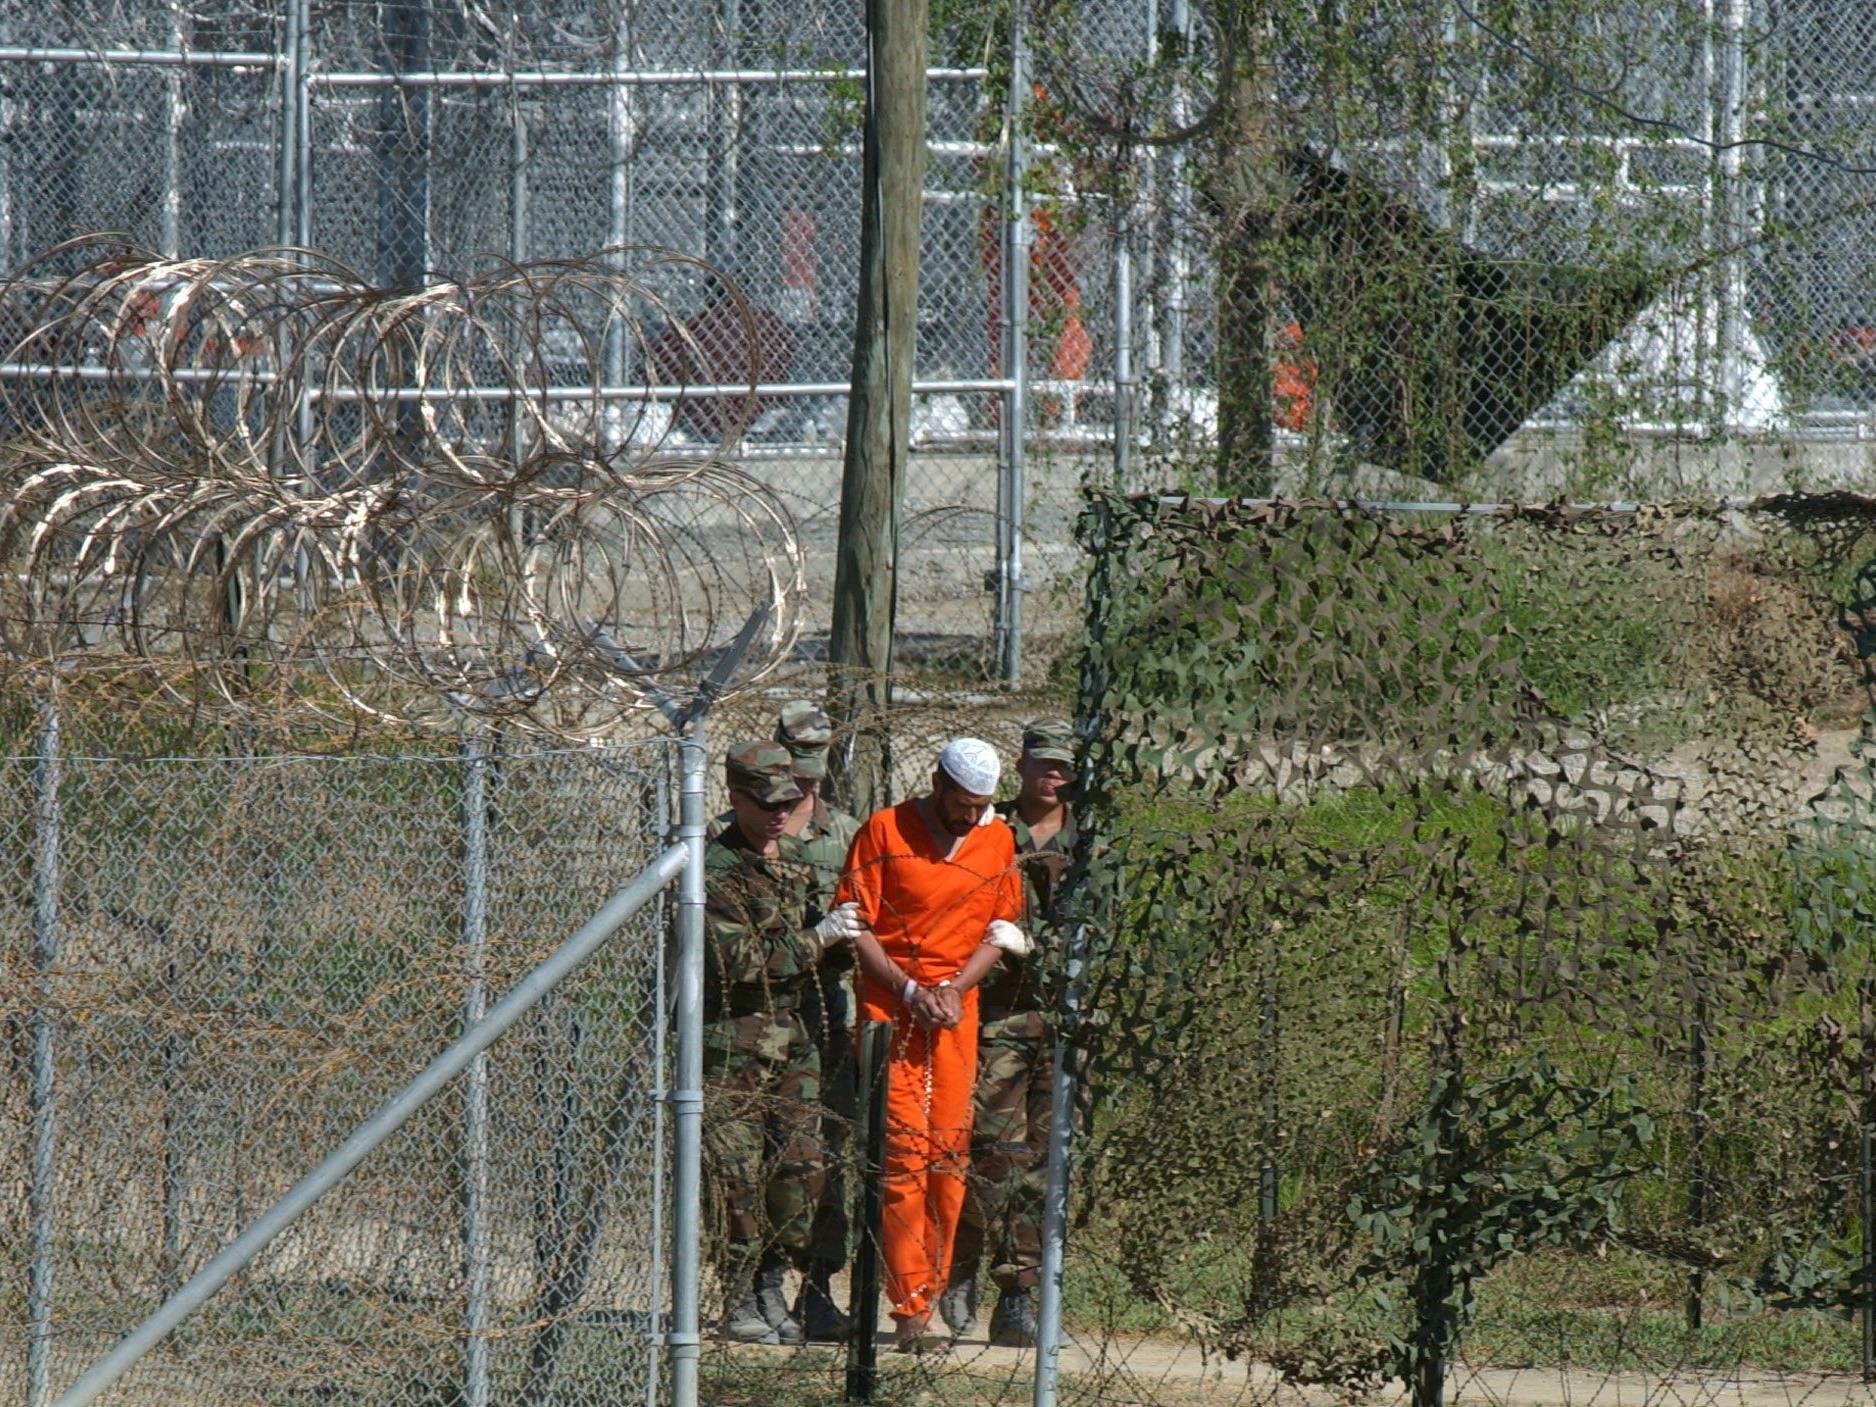 171 Gefangene sind erzeit in Guantanamo untergebracht (Bild von 20002).